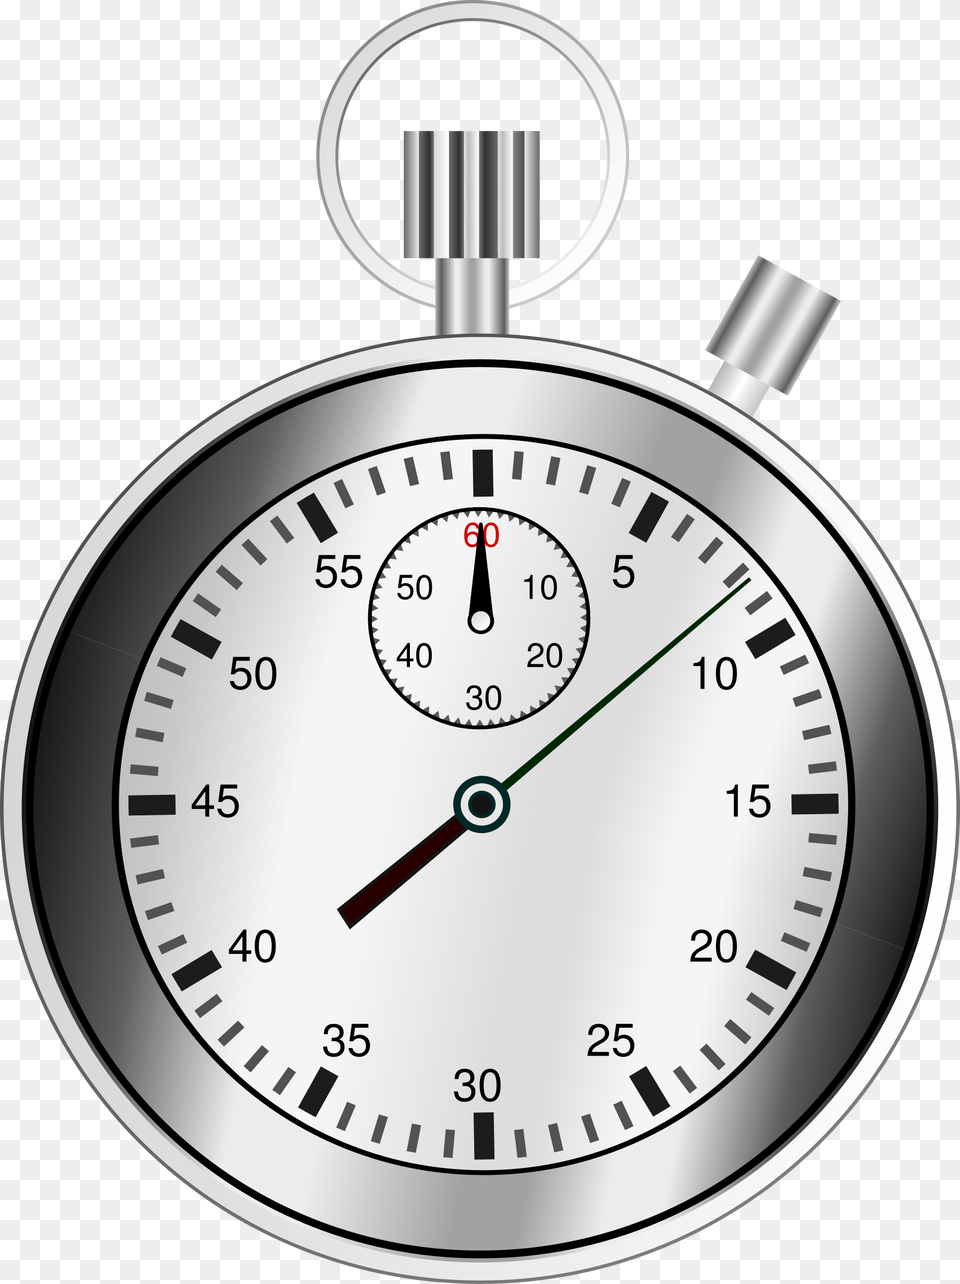 Cronmetro Tiempo Reloj Fecha Lmite Hora Stop Watch Clip Art, Stopwatch, Gas Pump, Machine, Pump Free Png Download